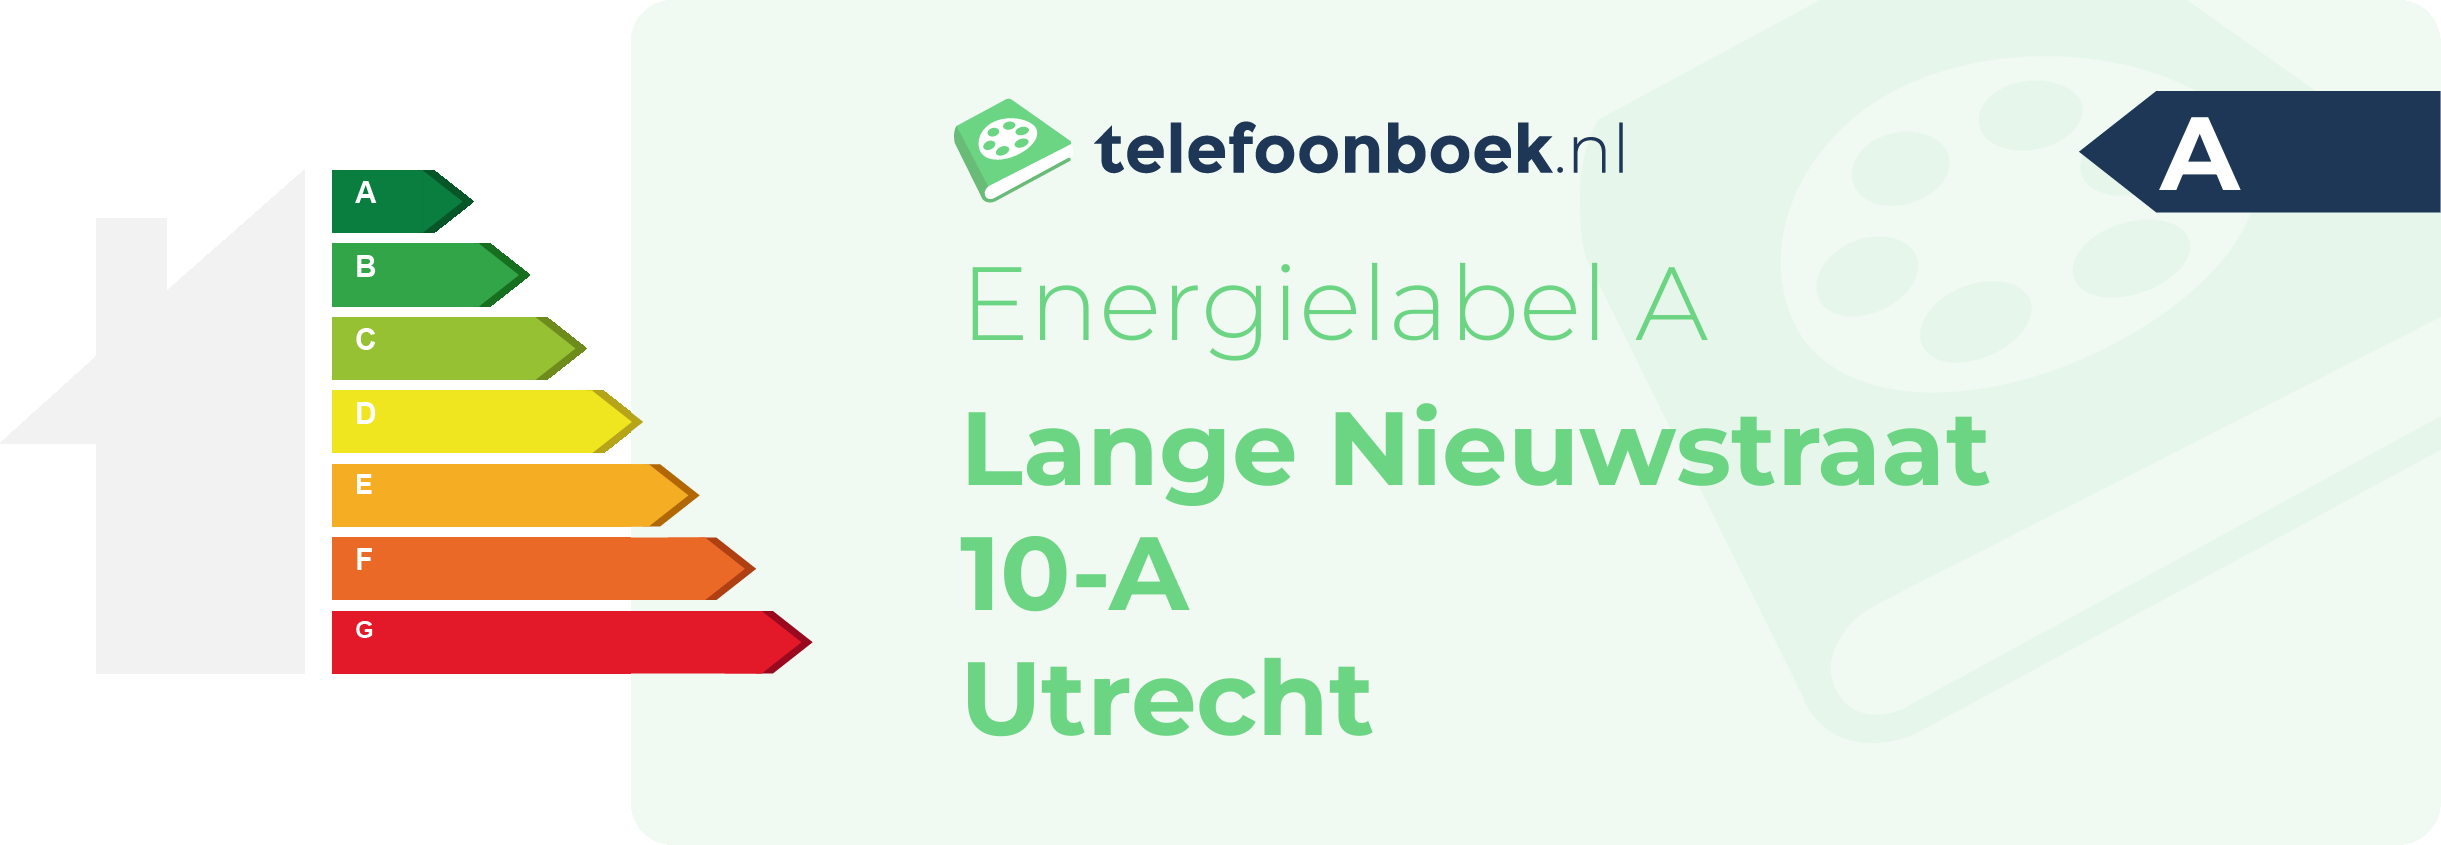 Energielabel Lange Nieuwstraat 10-A Utrecht